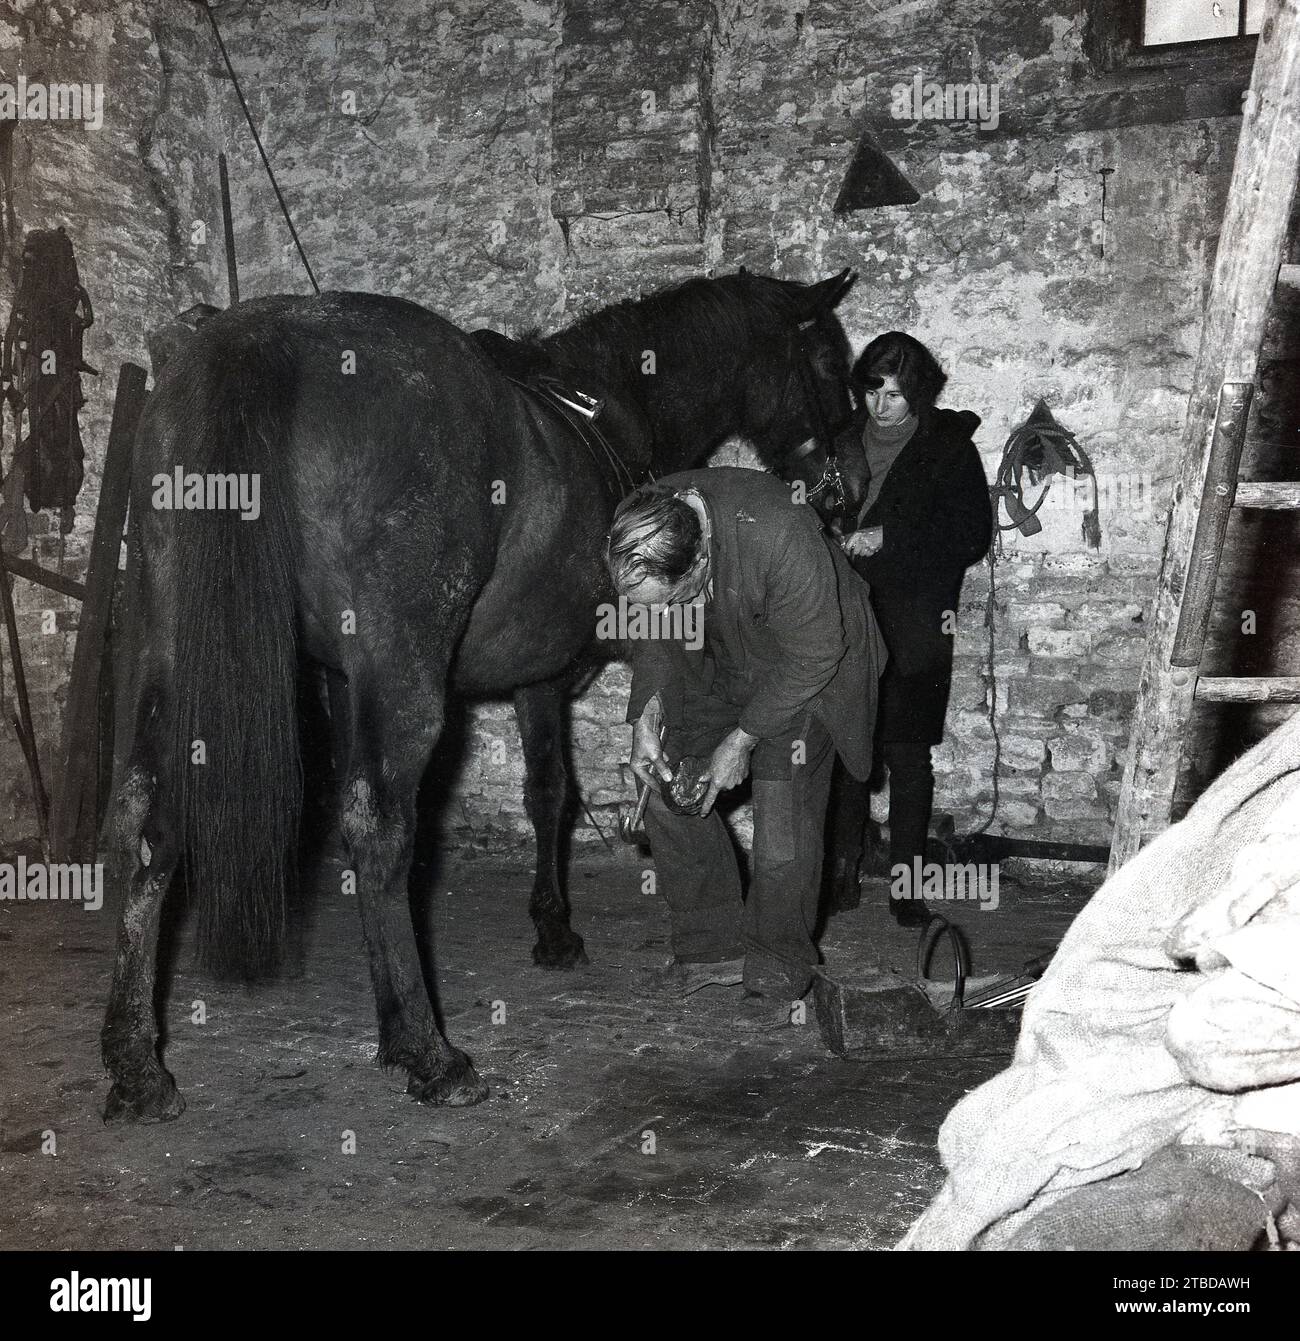 Années 1970, historique, à l'intérieur d'une grange en pierre, un maréchal ferrant un cheval, avec une fille stable tenant la tête du cheval, Angleterre, Royaume-Uni. Banque D'Images